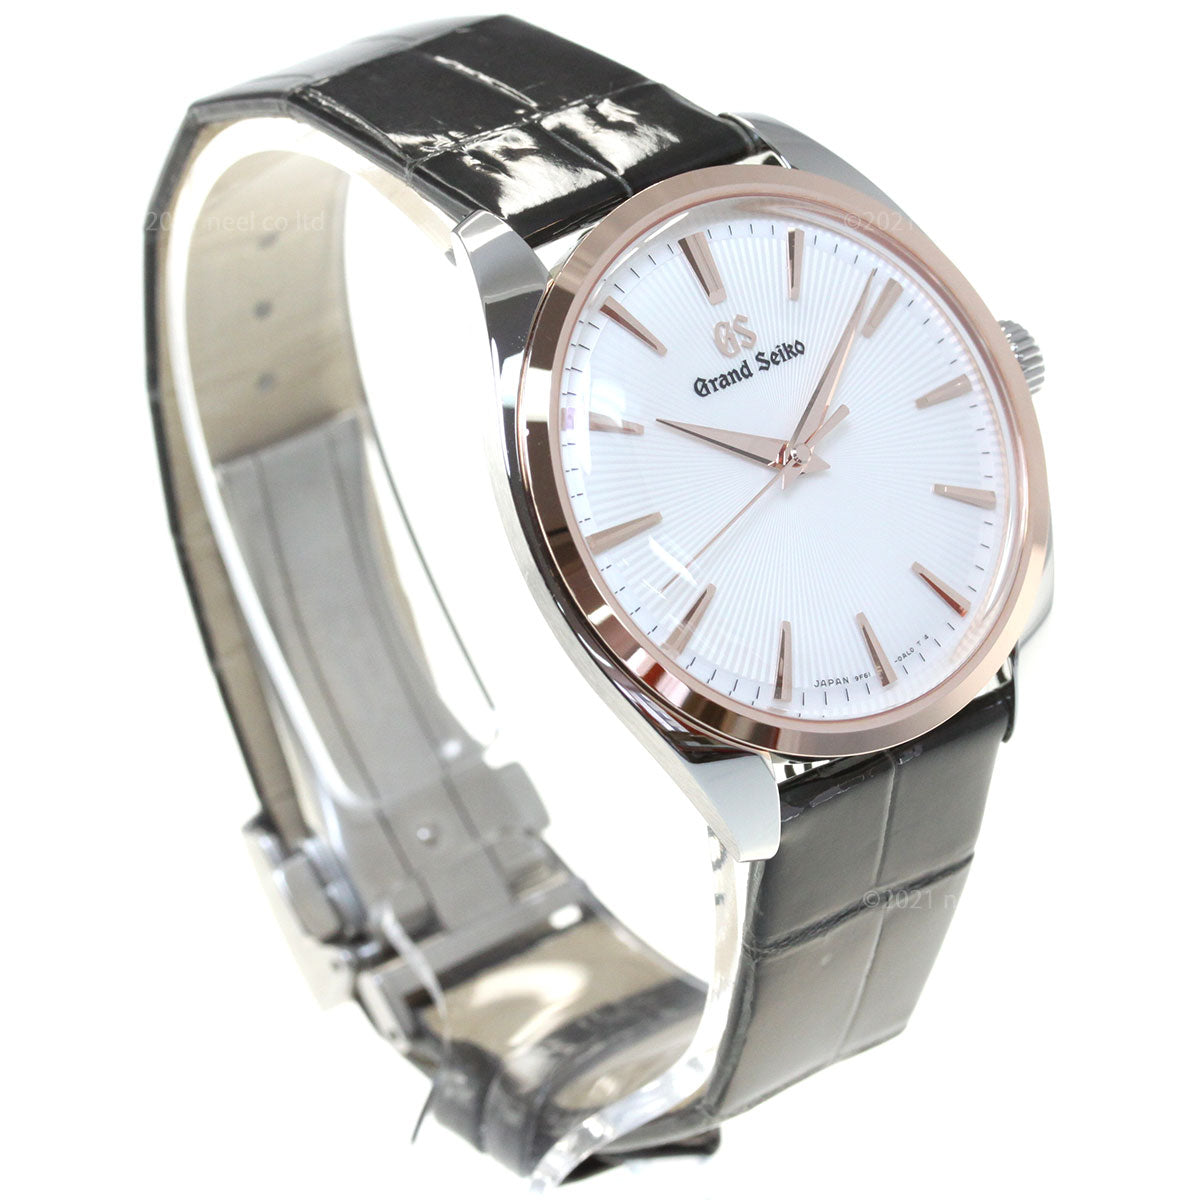 グランドセイコー GRAND SEIKO 腕時計 ペアモデル メンズ エレガンス Elegance Collection SBGX344【36回無金利ローン】